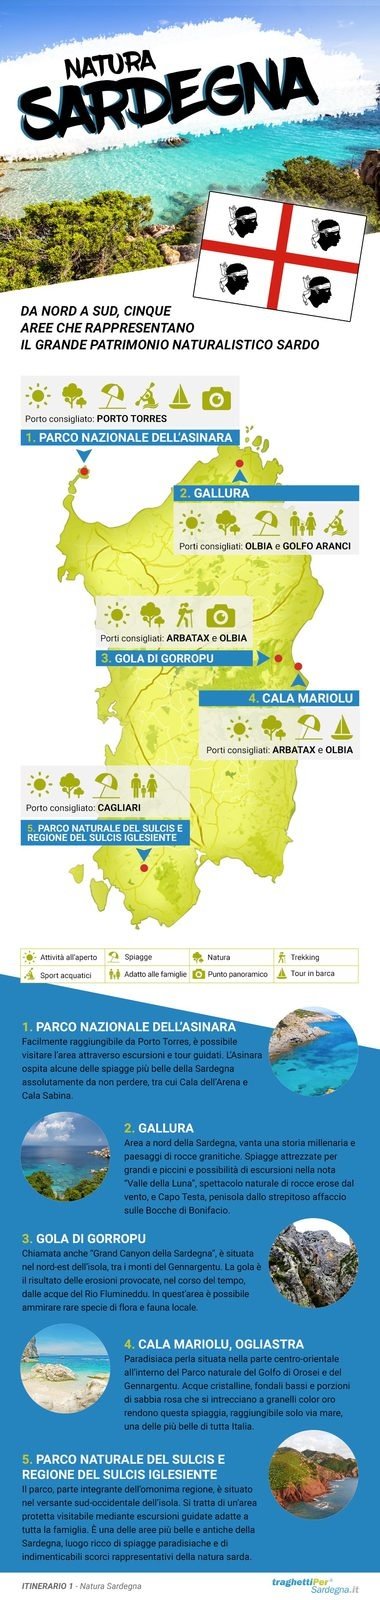 Infografica Natura Sardegna